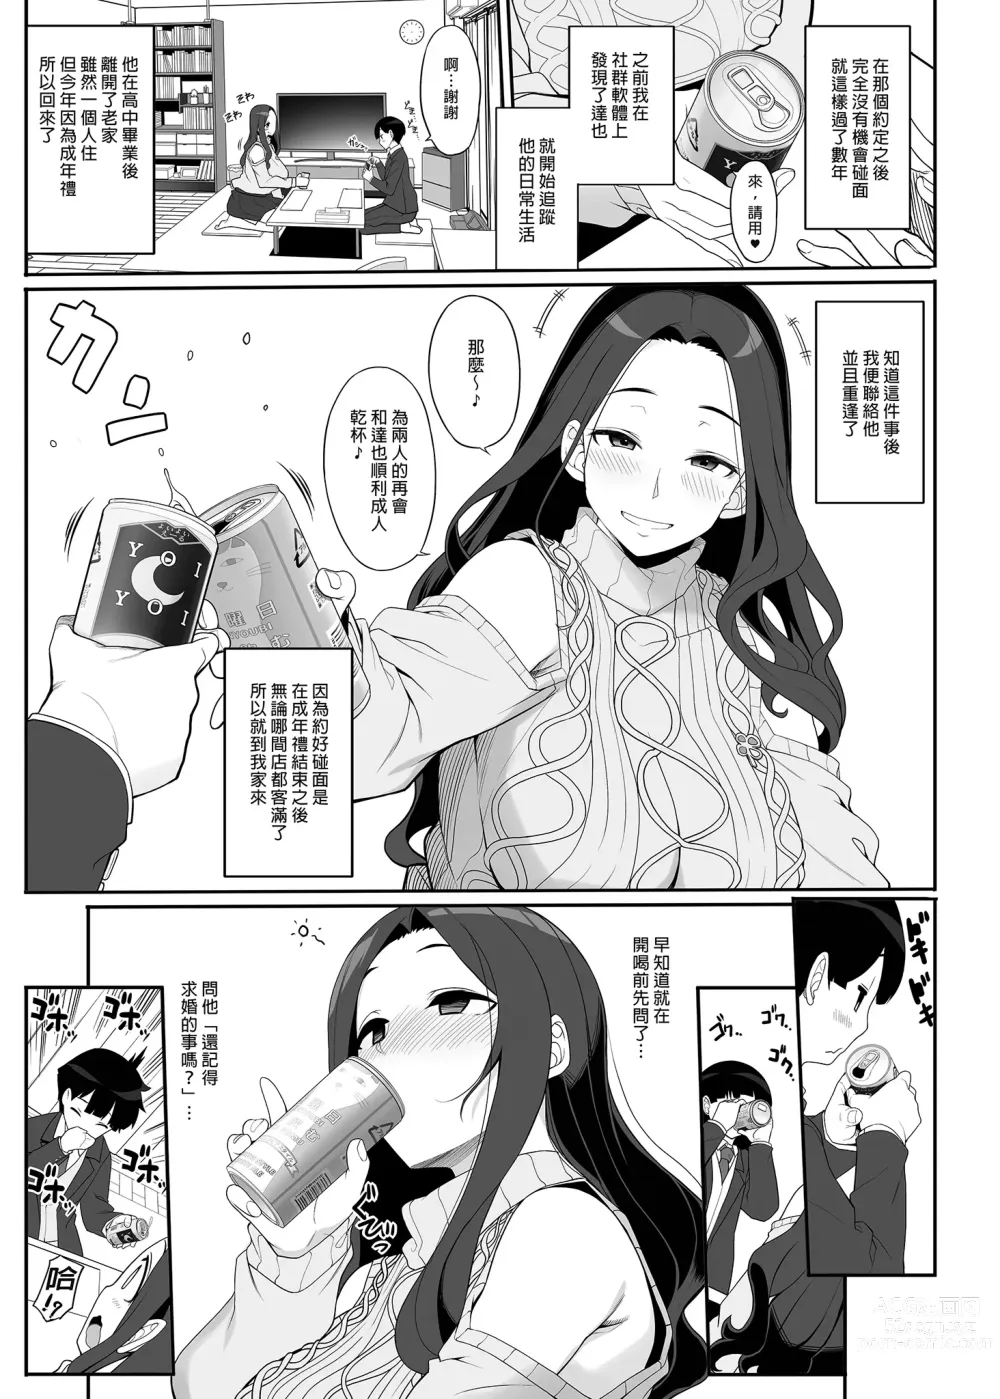 Page 5 of doujinshi 和痴情的姐姐重逢後竟被求婚且每日性福連連 (uncensored)